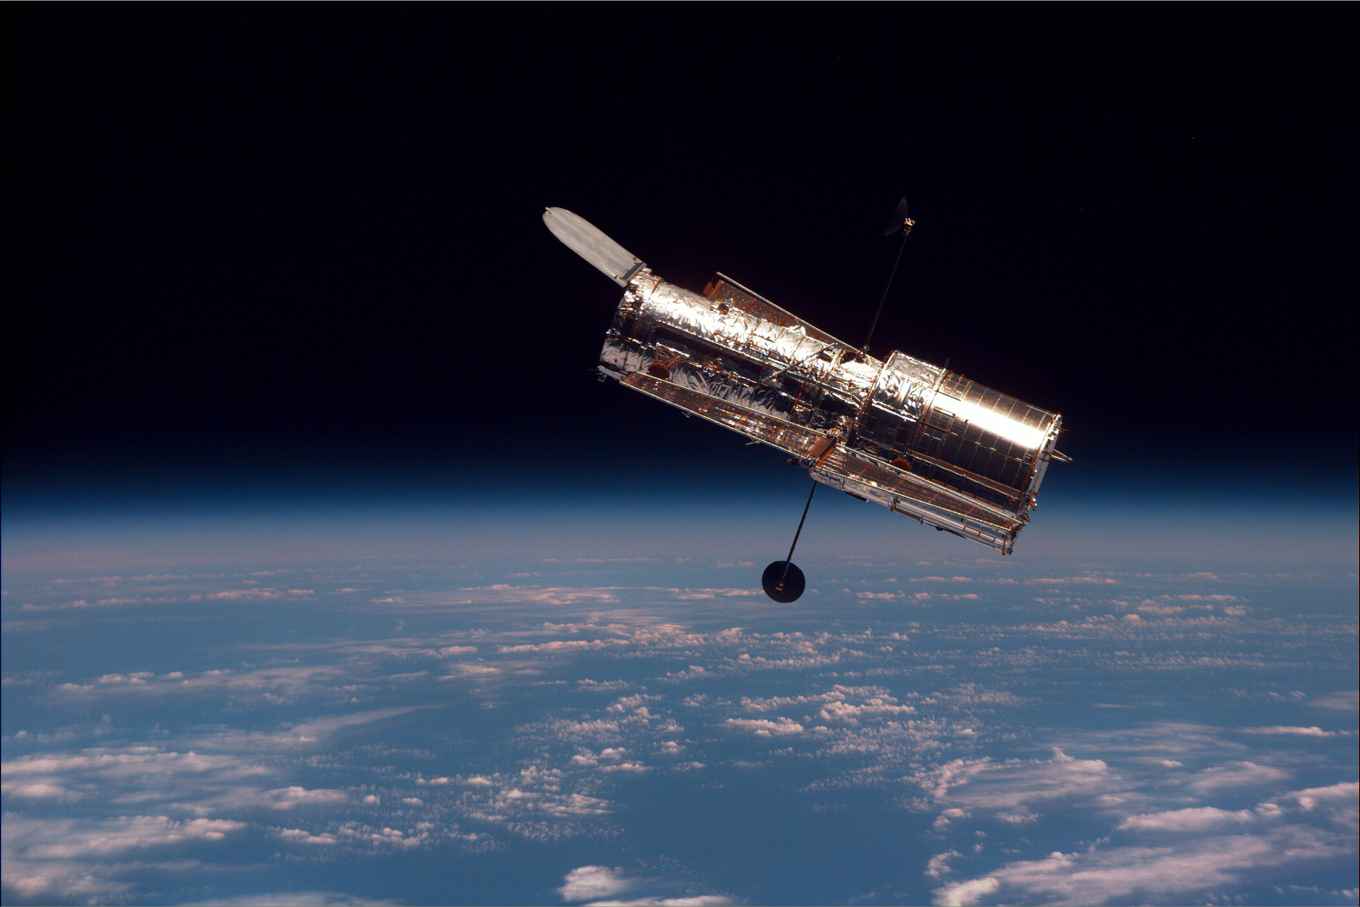 Ruimtetelescoop Hubble, gezien vanuit Space Shuttle Discovery. Beeld: NASA